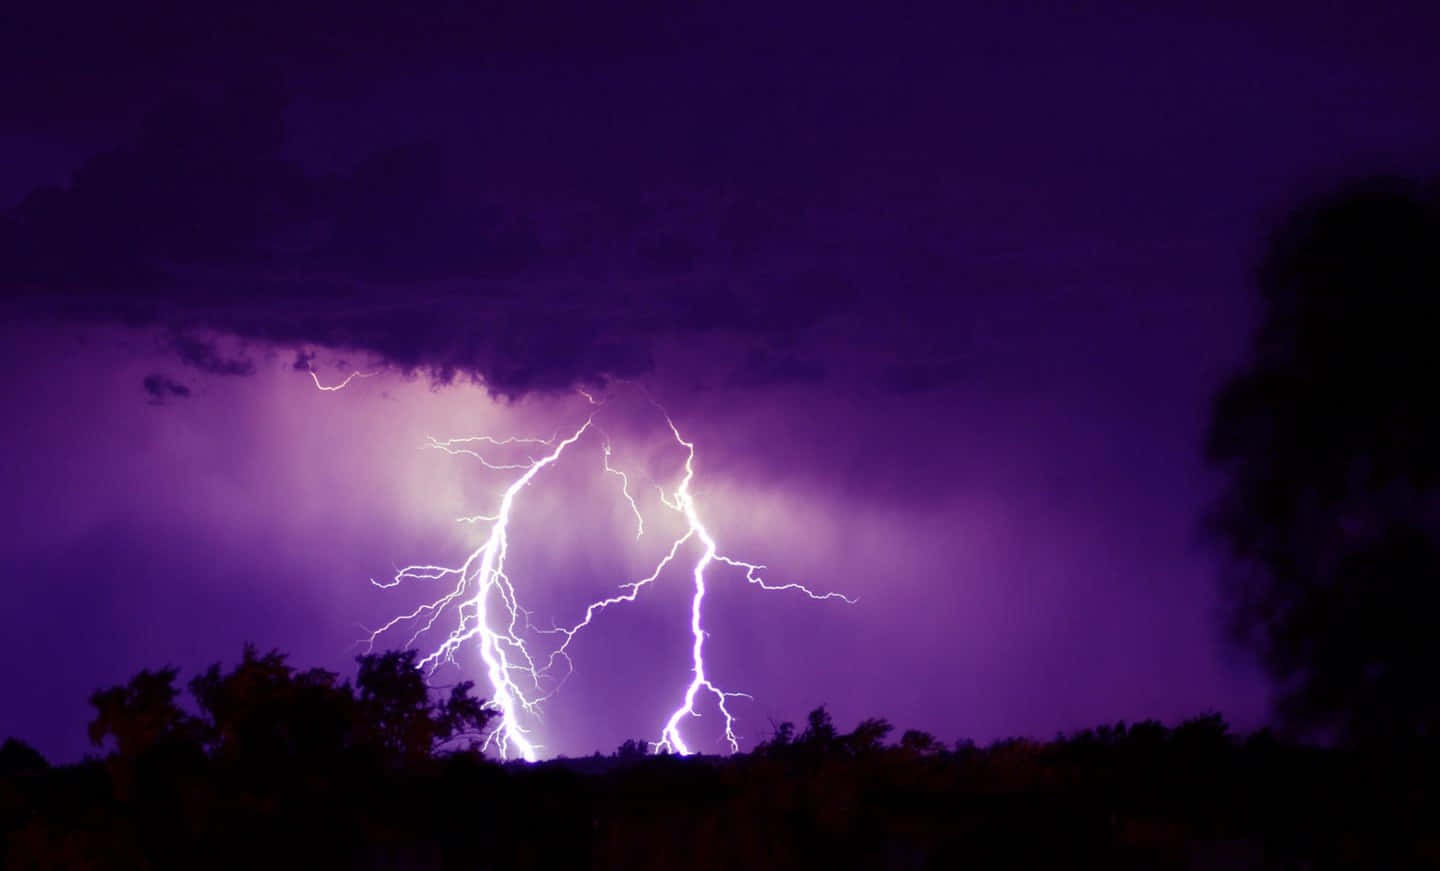 Caption: Electric Purple Storm